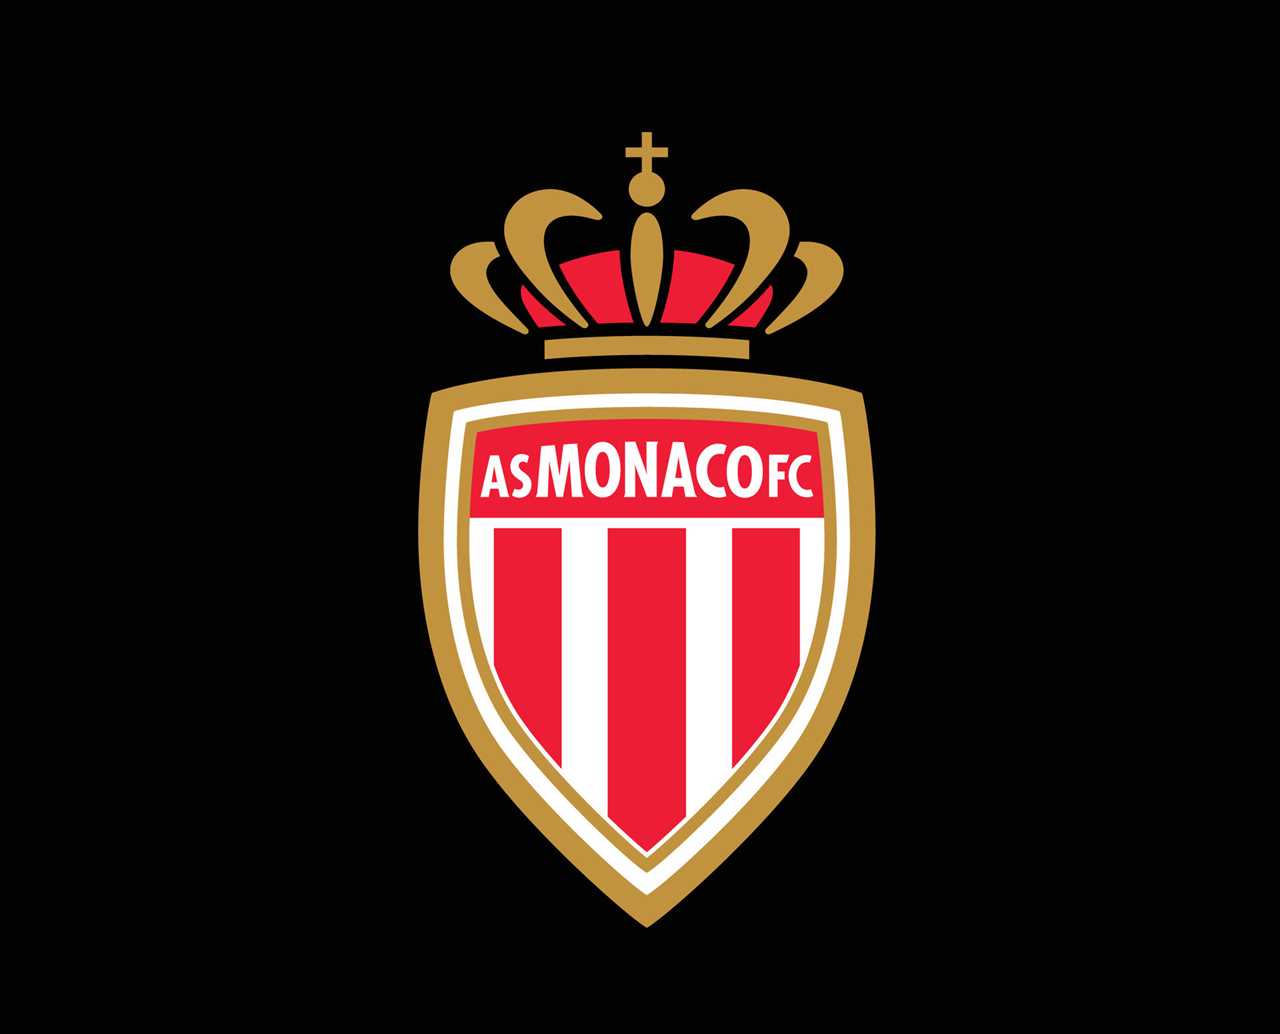 Le logo de Monaco comme signe de confiance